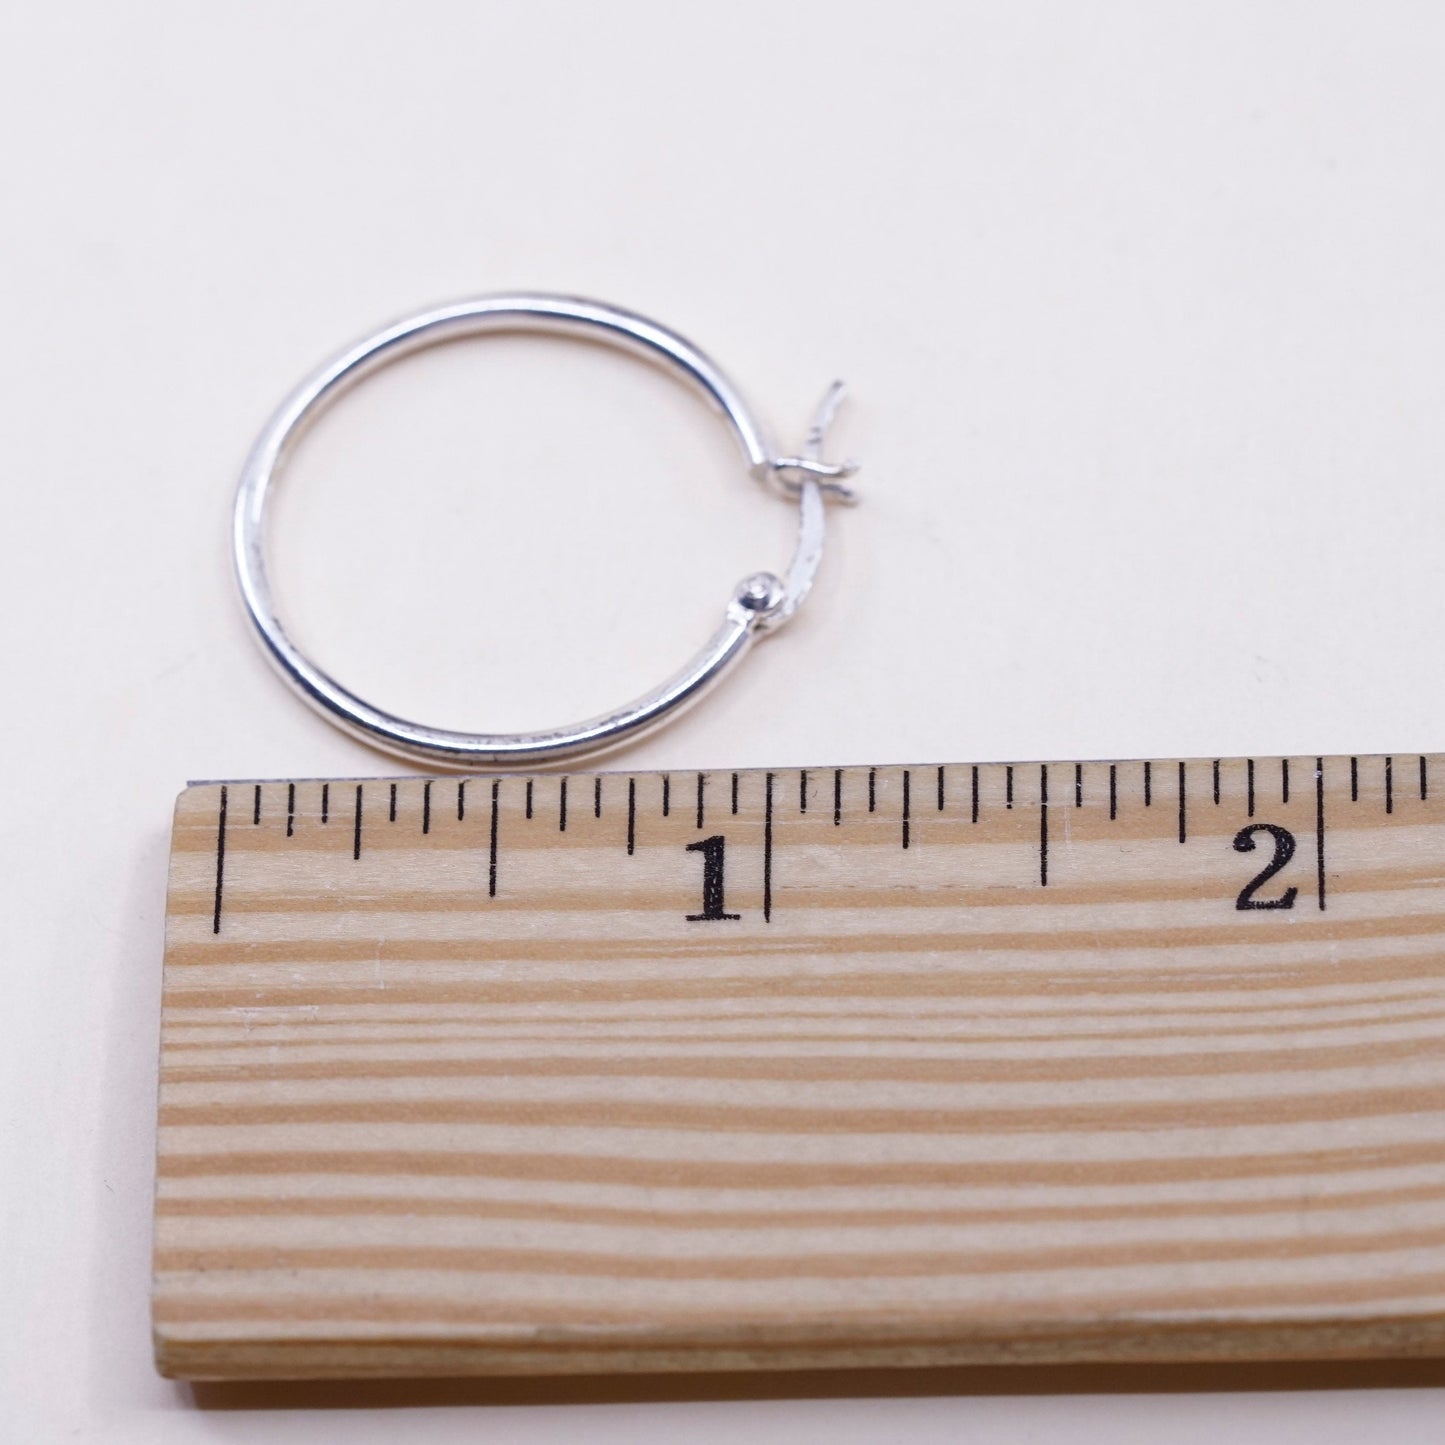 1”, Vintage sterling silver loop earrings, fashion minimalist primitive hoops